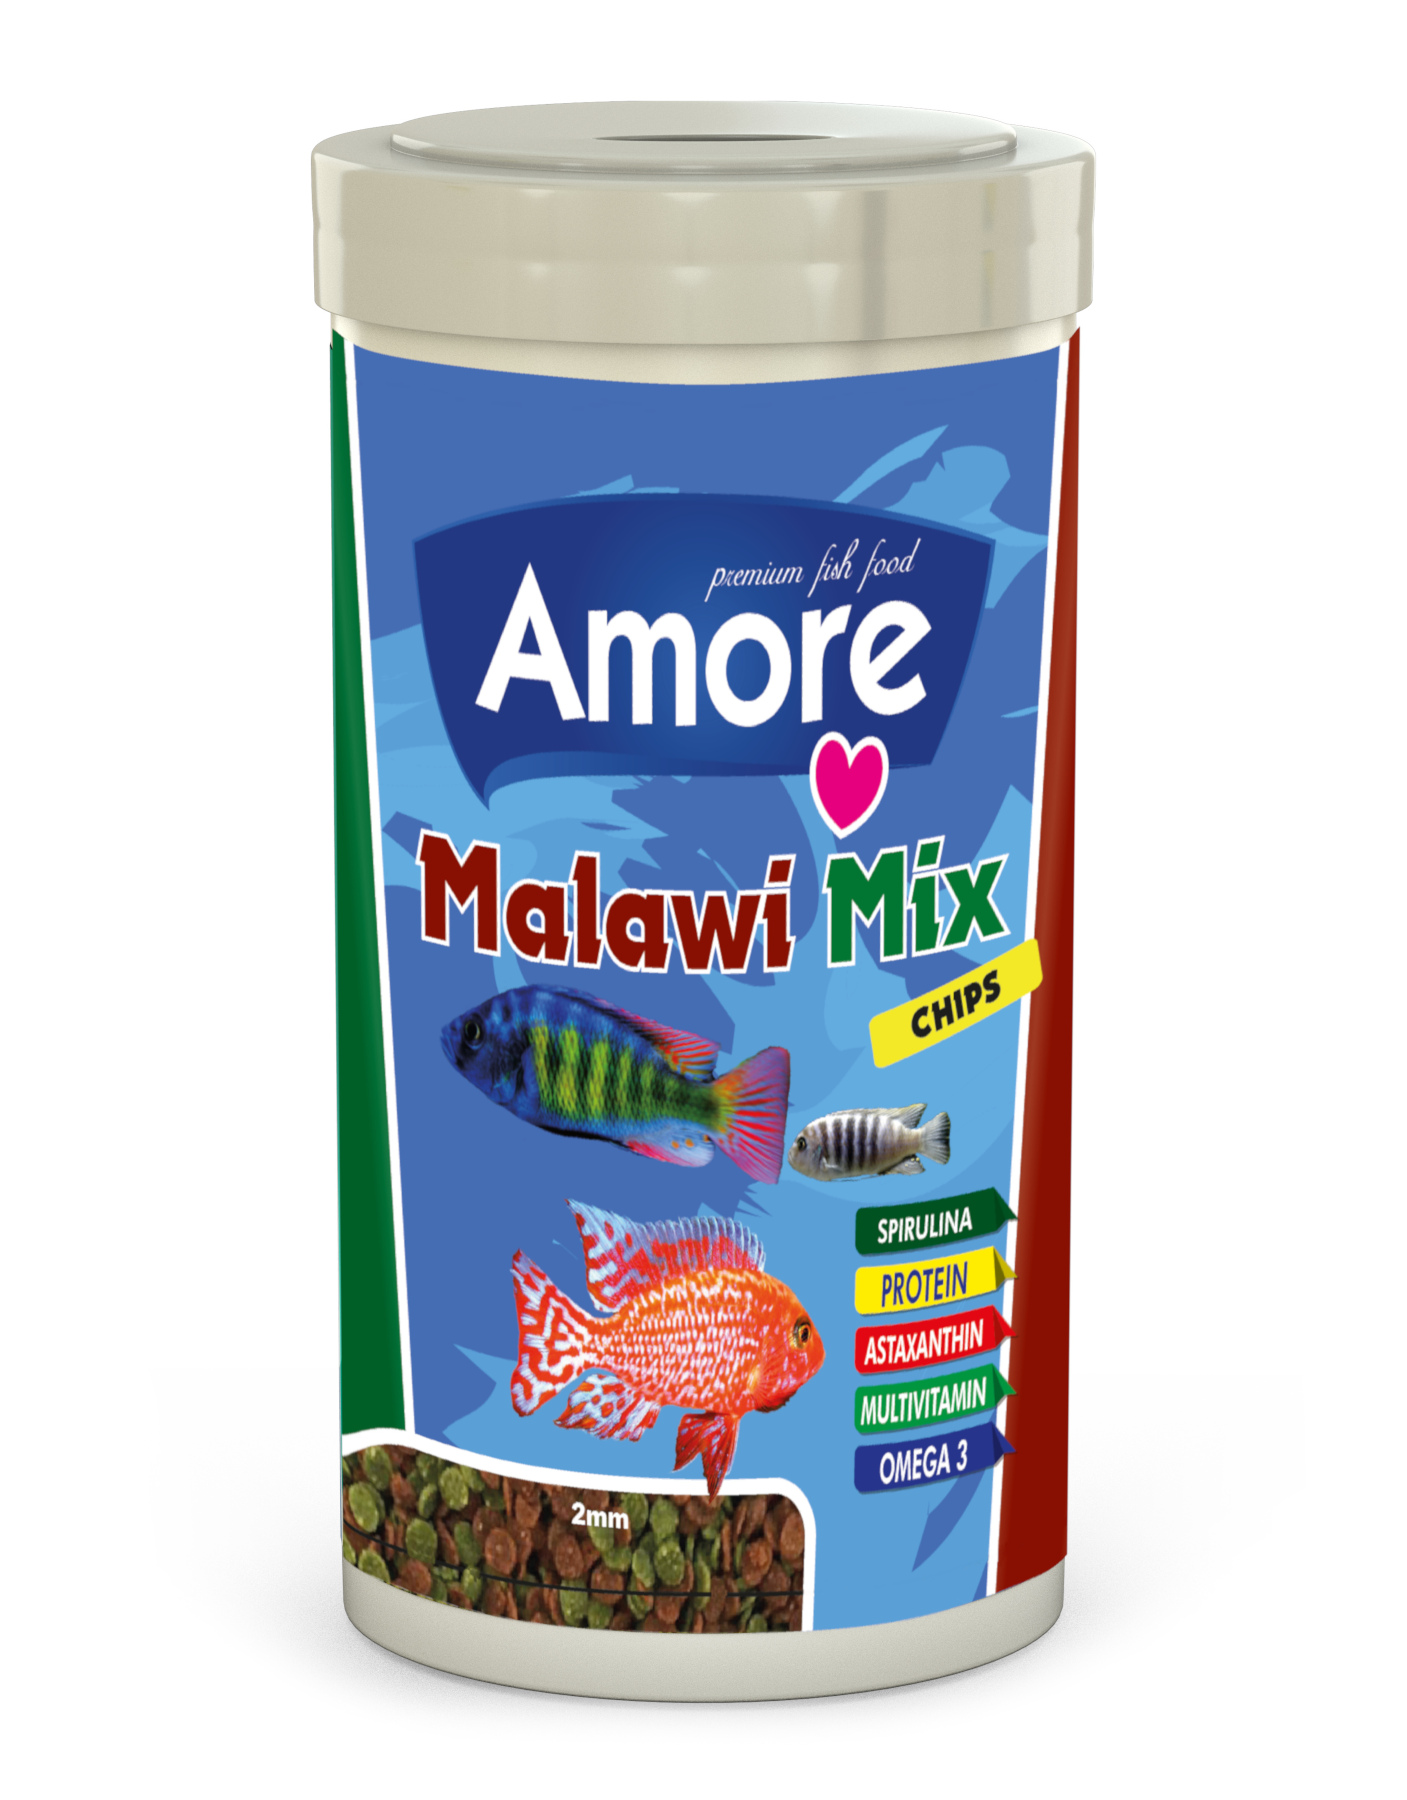 Amore Amore Malawi Mix Chips 1000ml ve Lotus Cichlid Mix 1000ml Kutu Balık Yemi